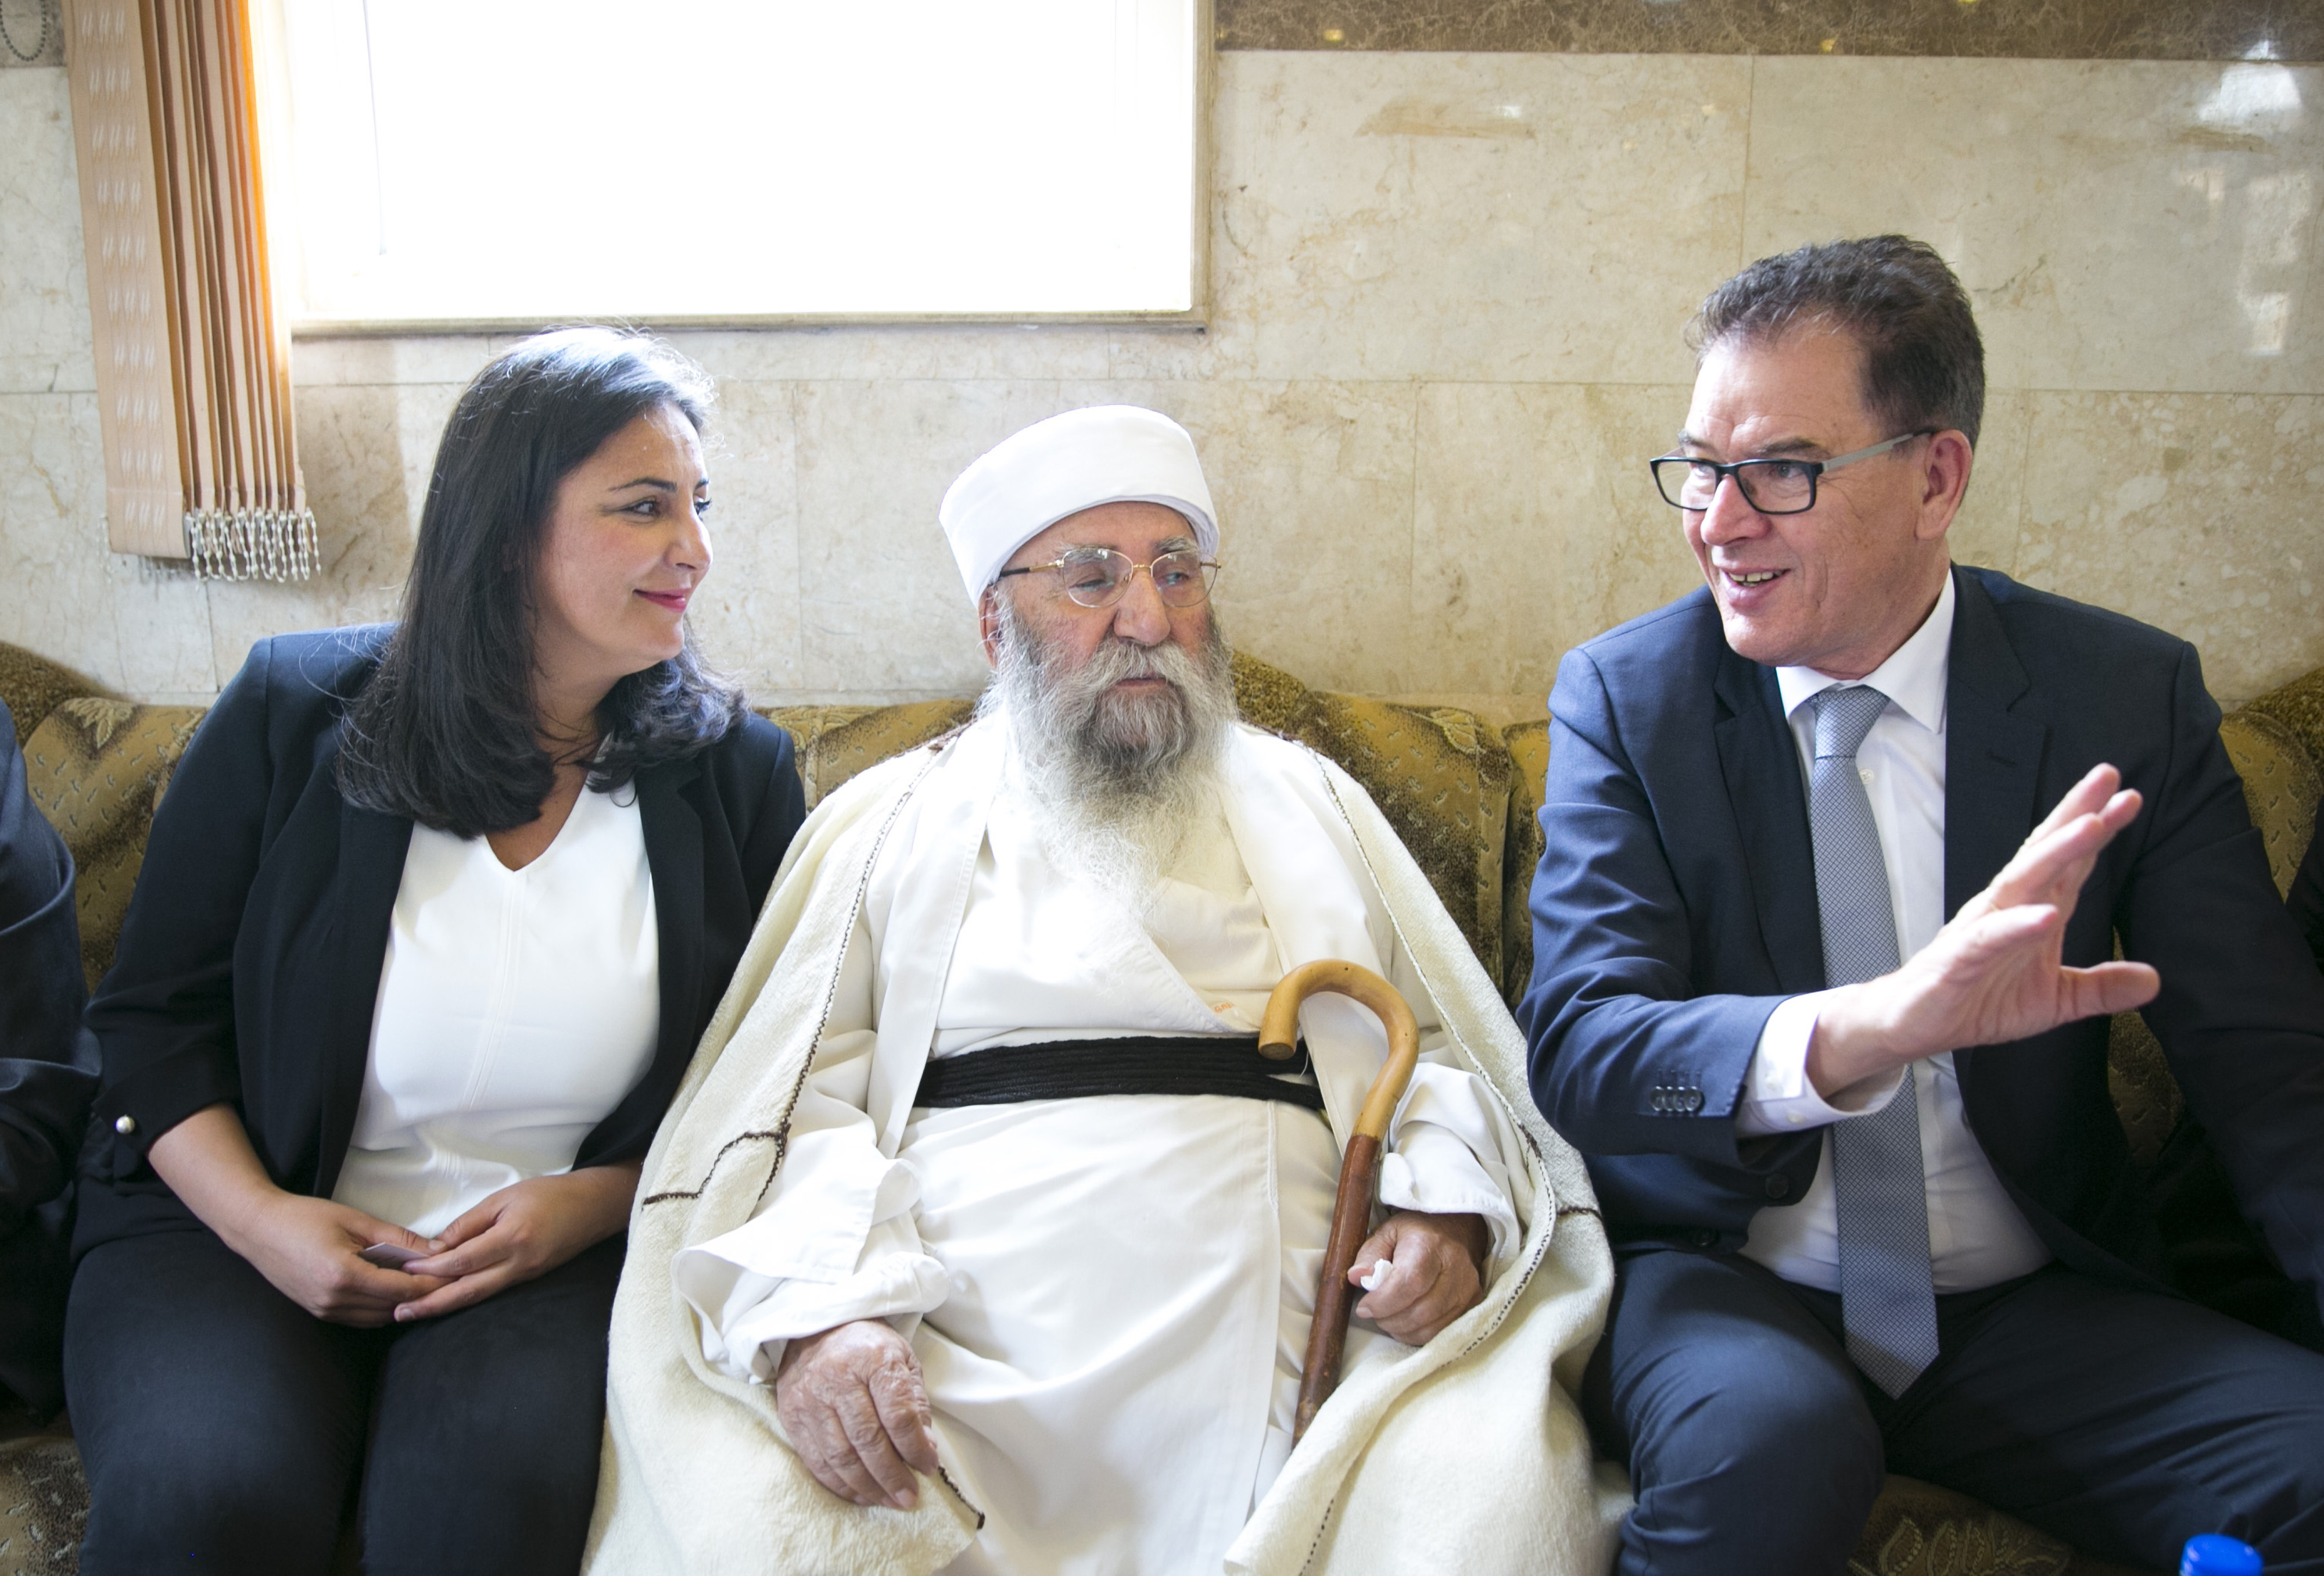 Entwicklungsminister Müller bei seinem Treffen mit Baba Sheikh im April 2018. Links auf dem Bild zu sehen ist die Gründerin des Vereins HAWAR.help, Düzen Tekkal